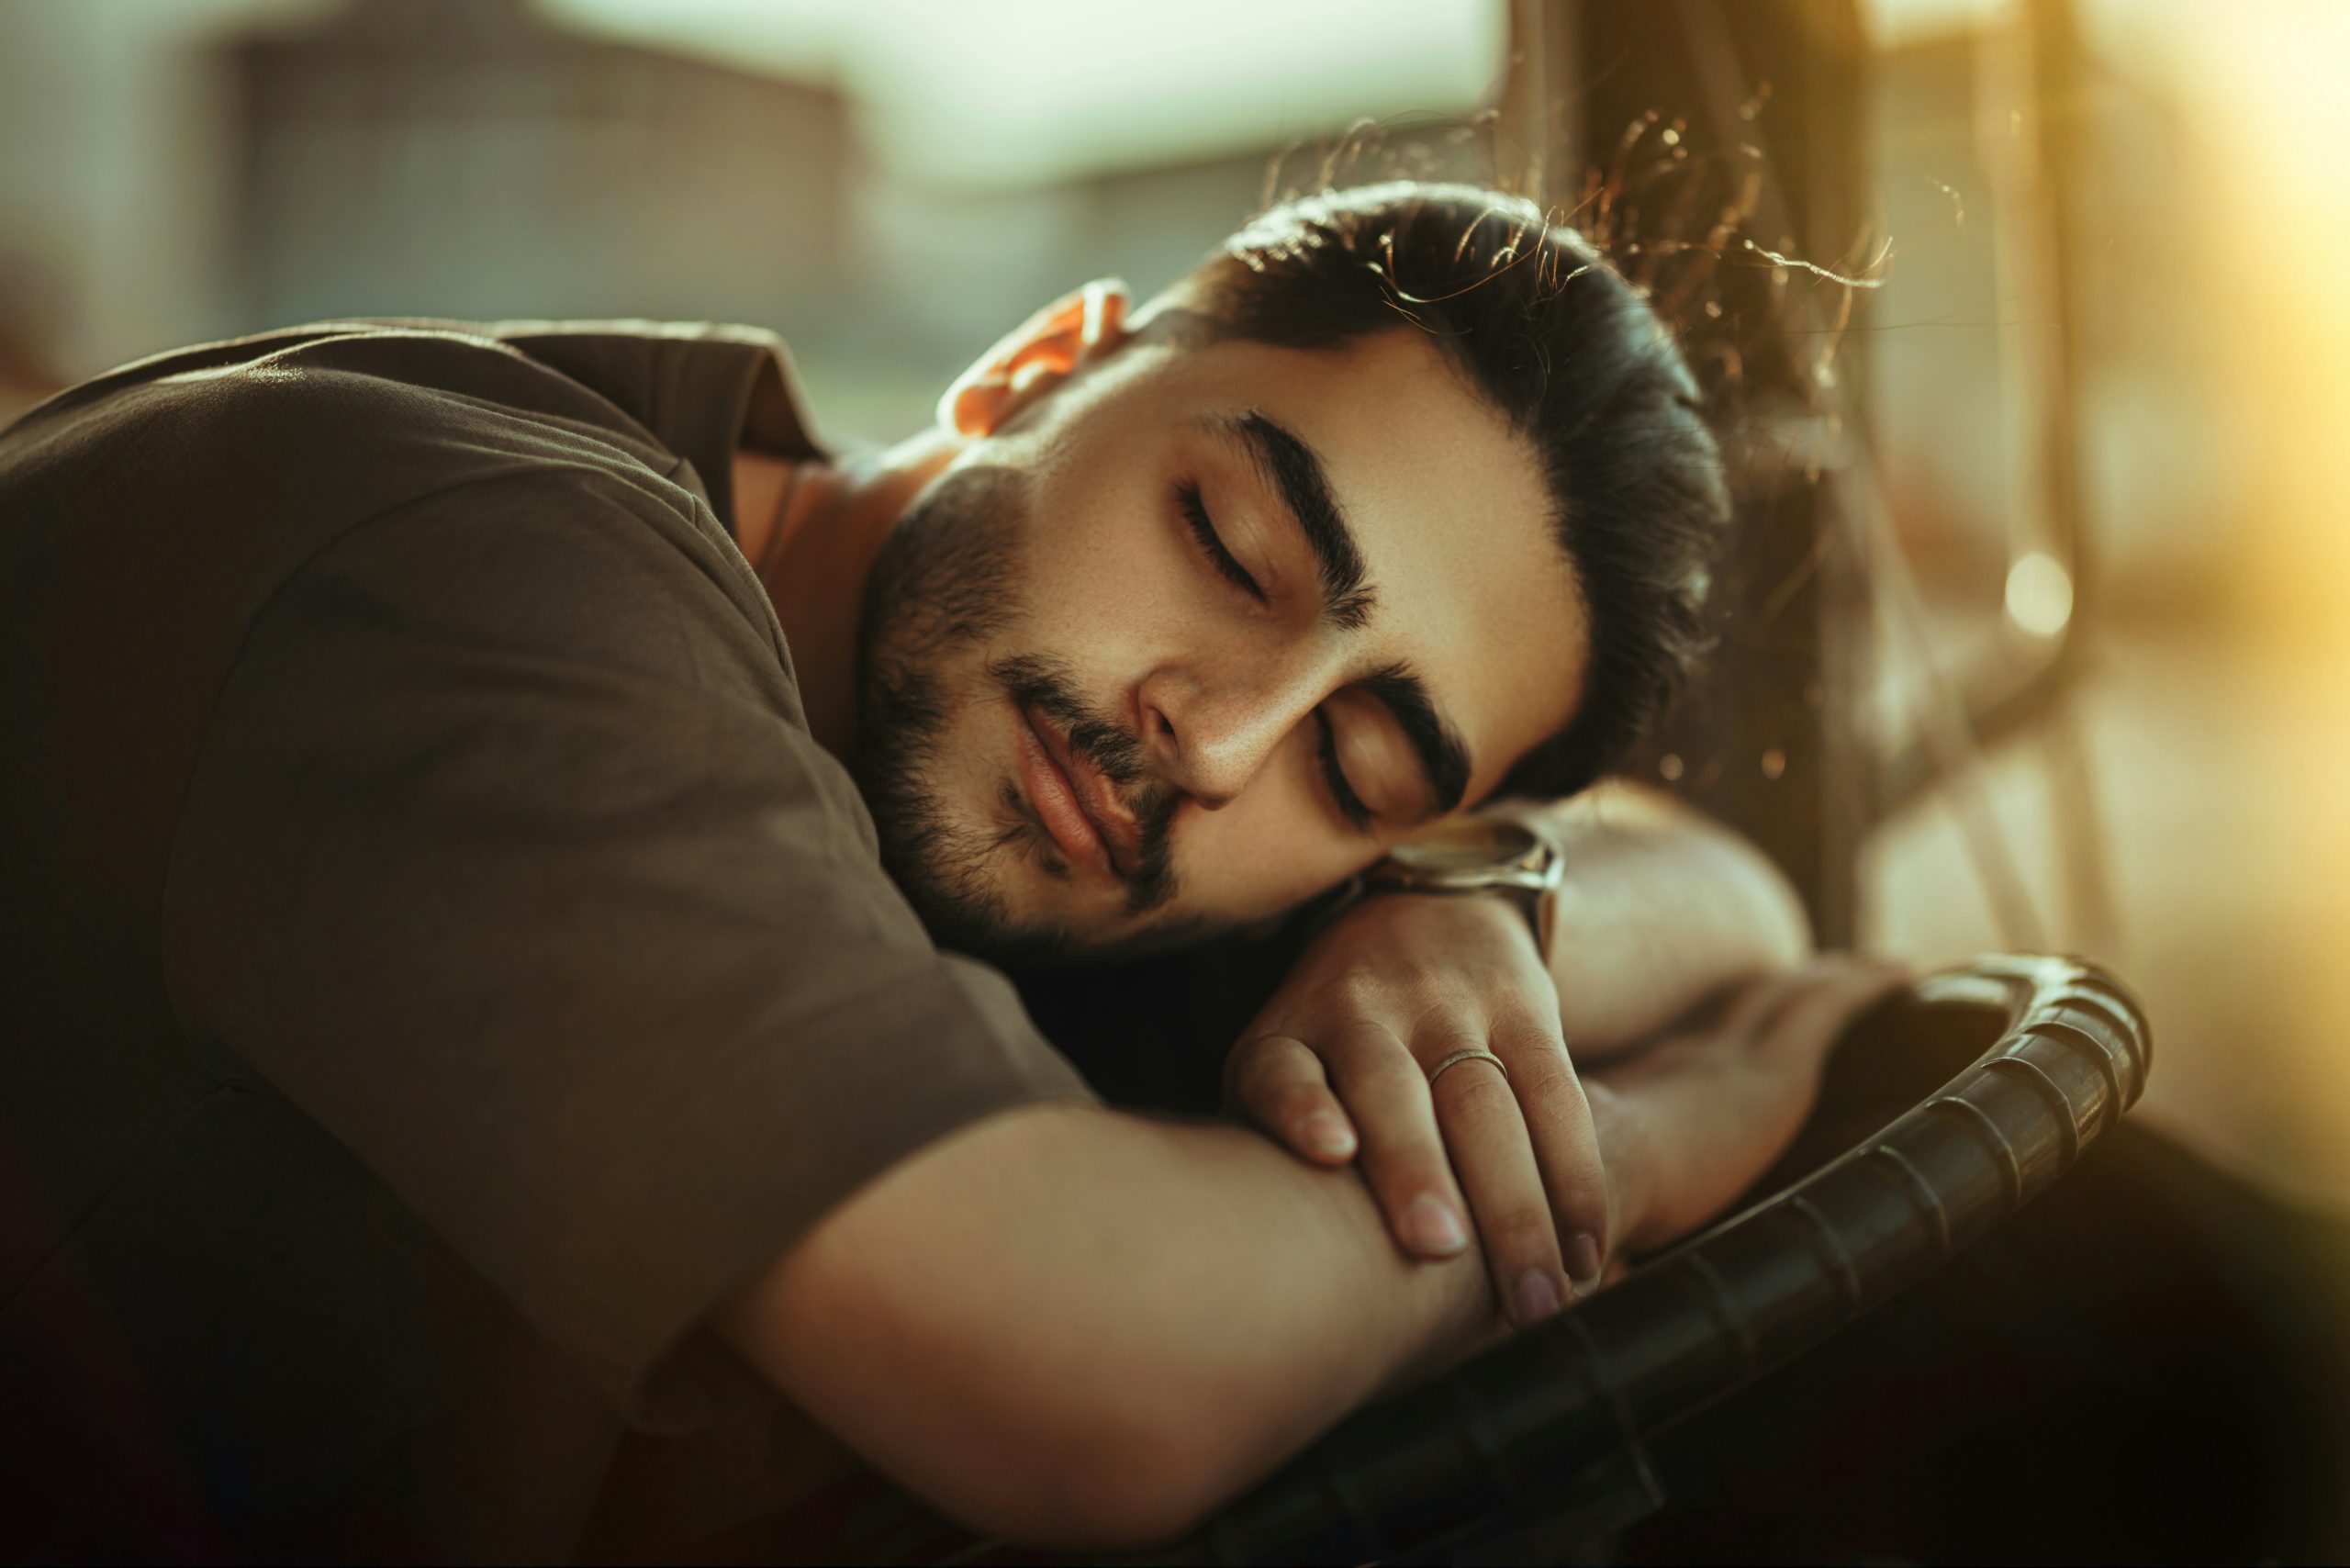 ύπνος: το σημάδι που μπορεί να συνδέεται με κίνδυνο καρδιακής προσβολής